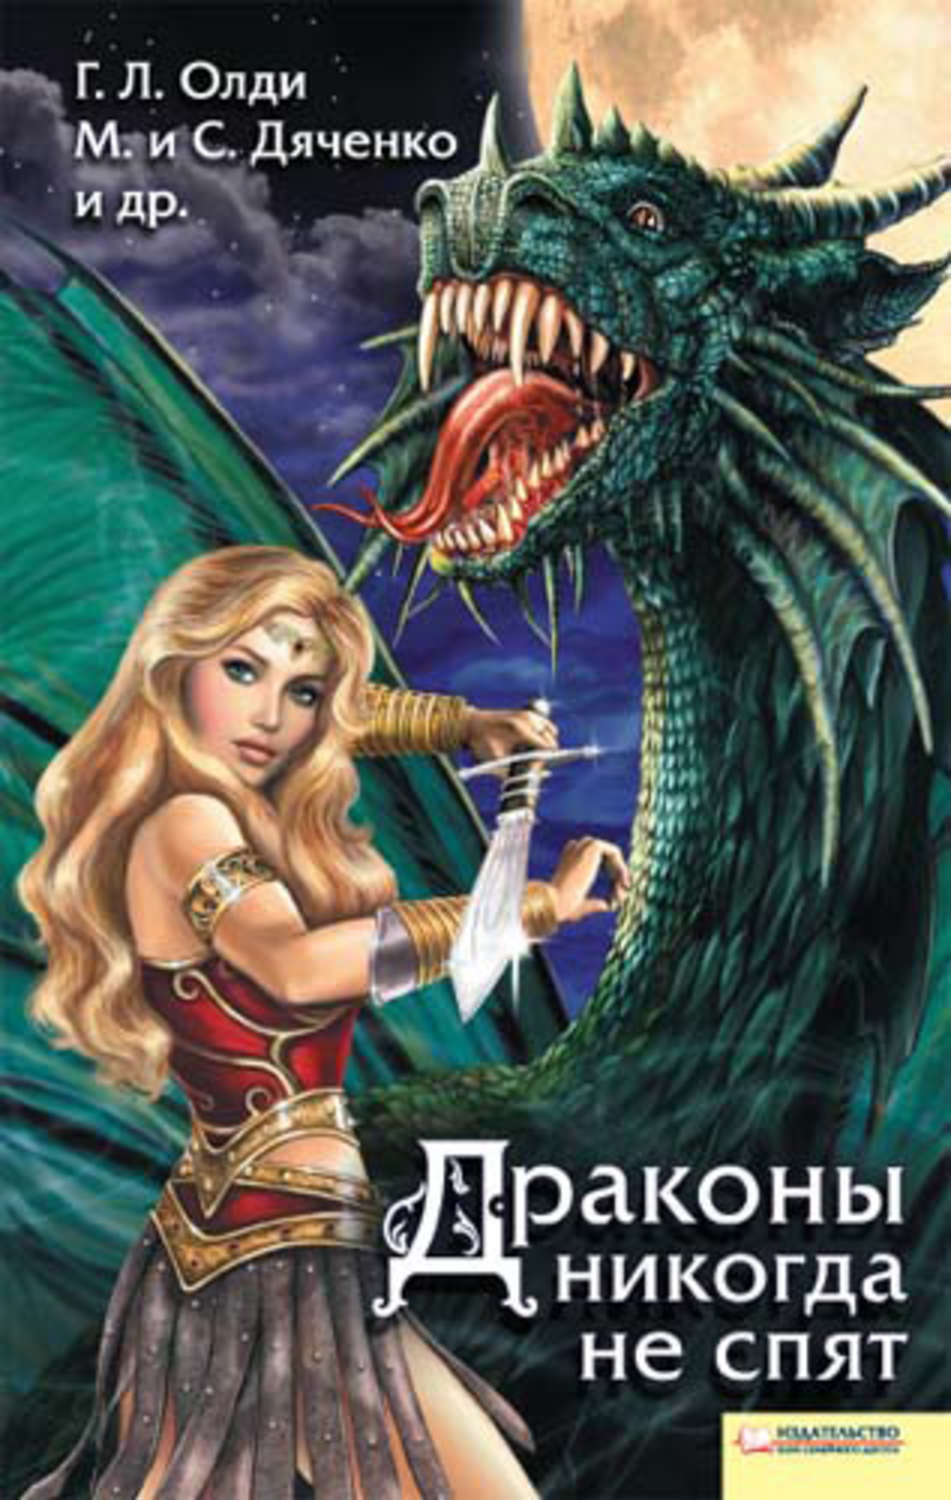 Читать книгу про драконов и любовь. Книга с драконом на обложке. Книги про драконов фэнтези. Книга драконов. Сборник фэнтези рассказов.